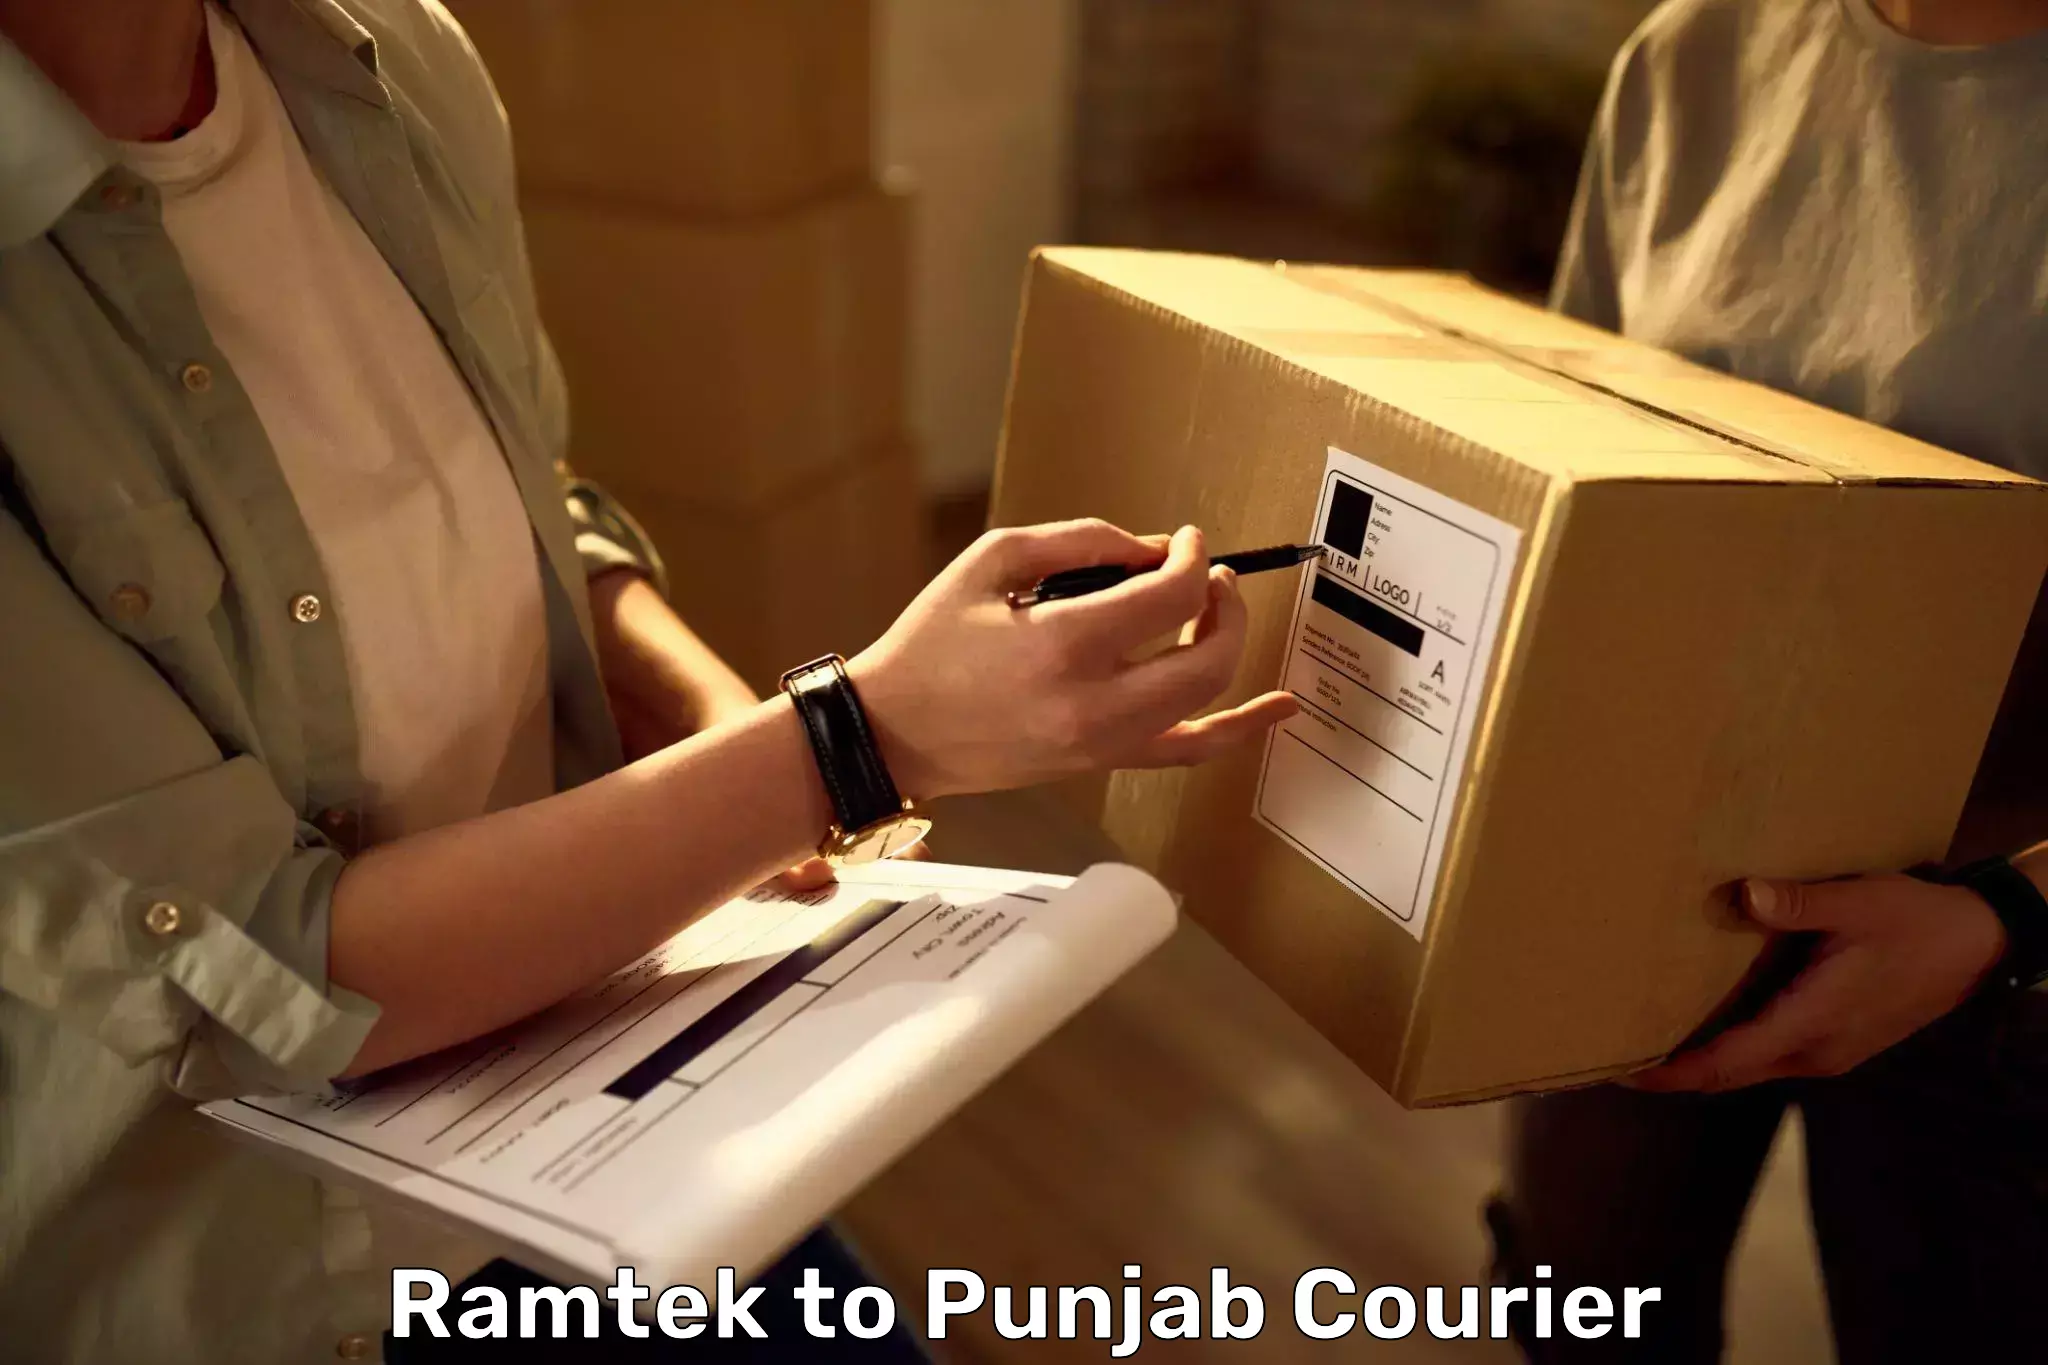 Luggage transport company Ramtek to Punjab